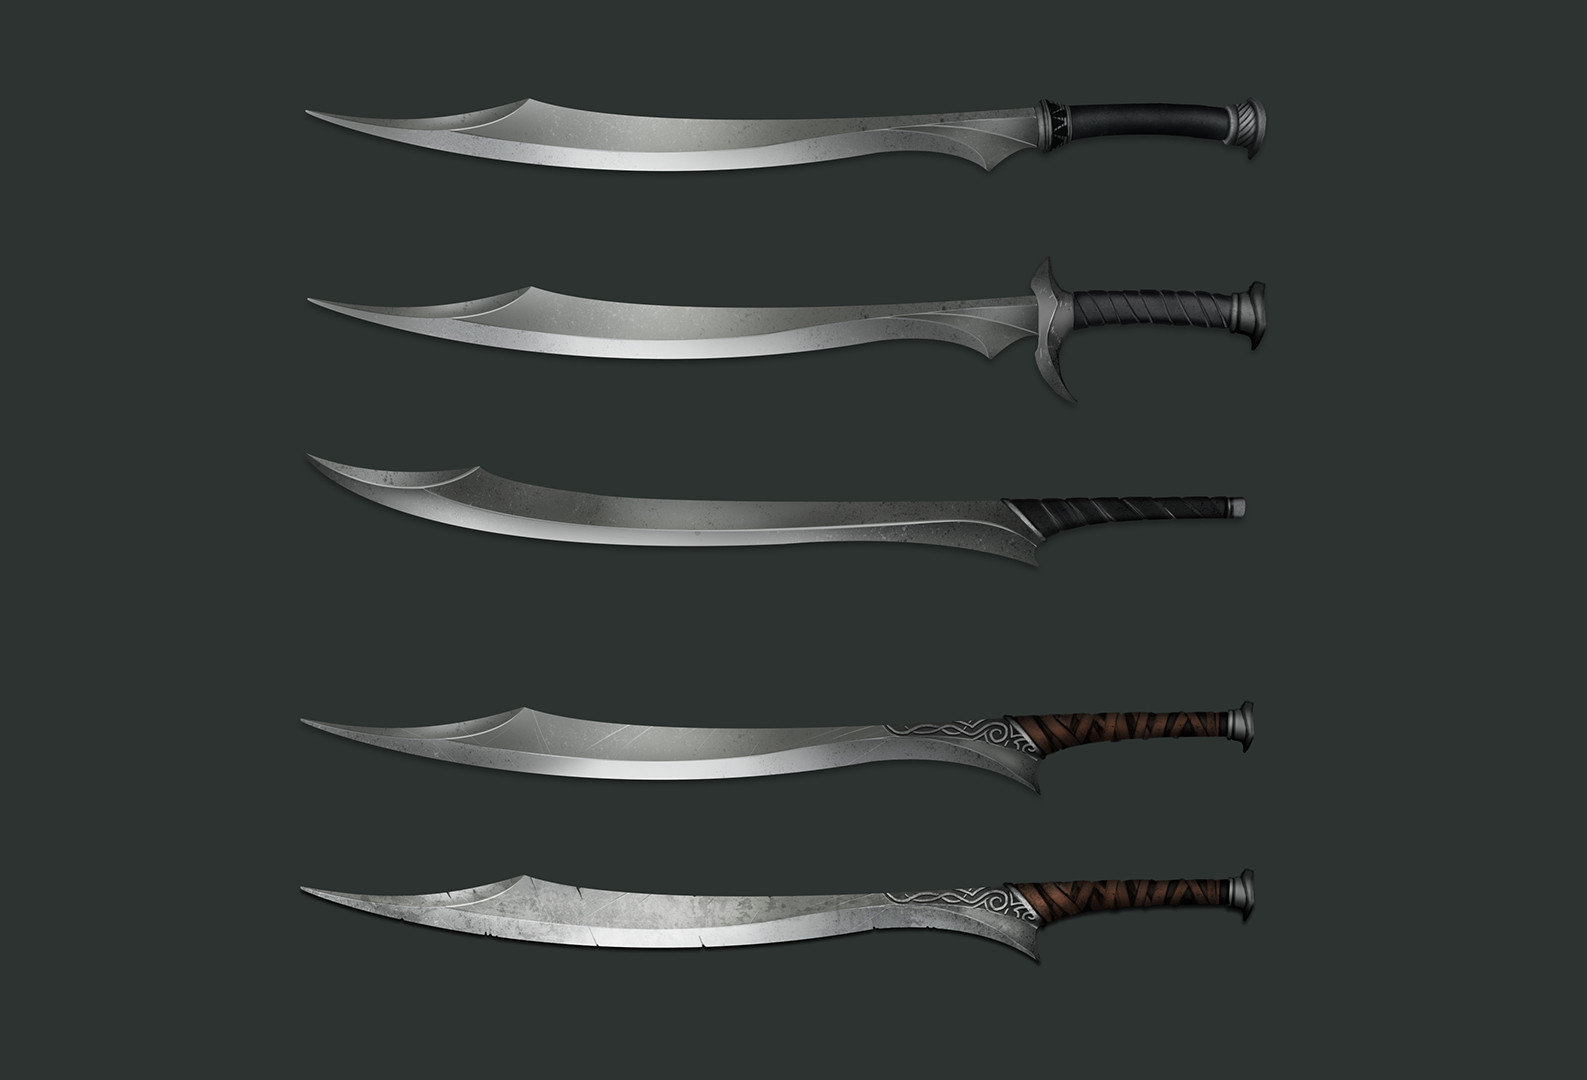 Sword concept art.